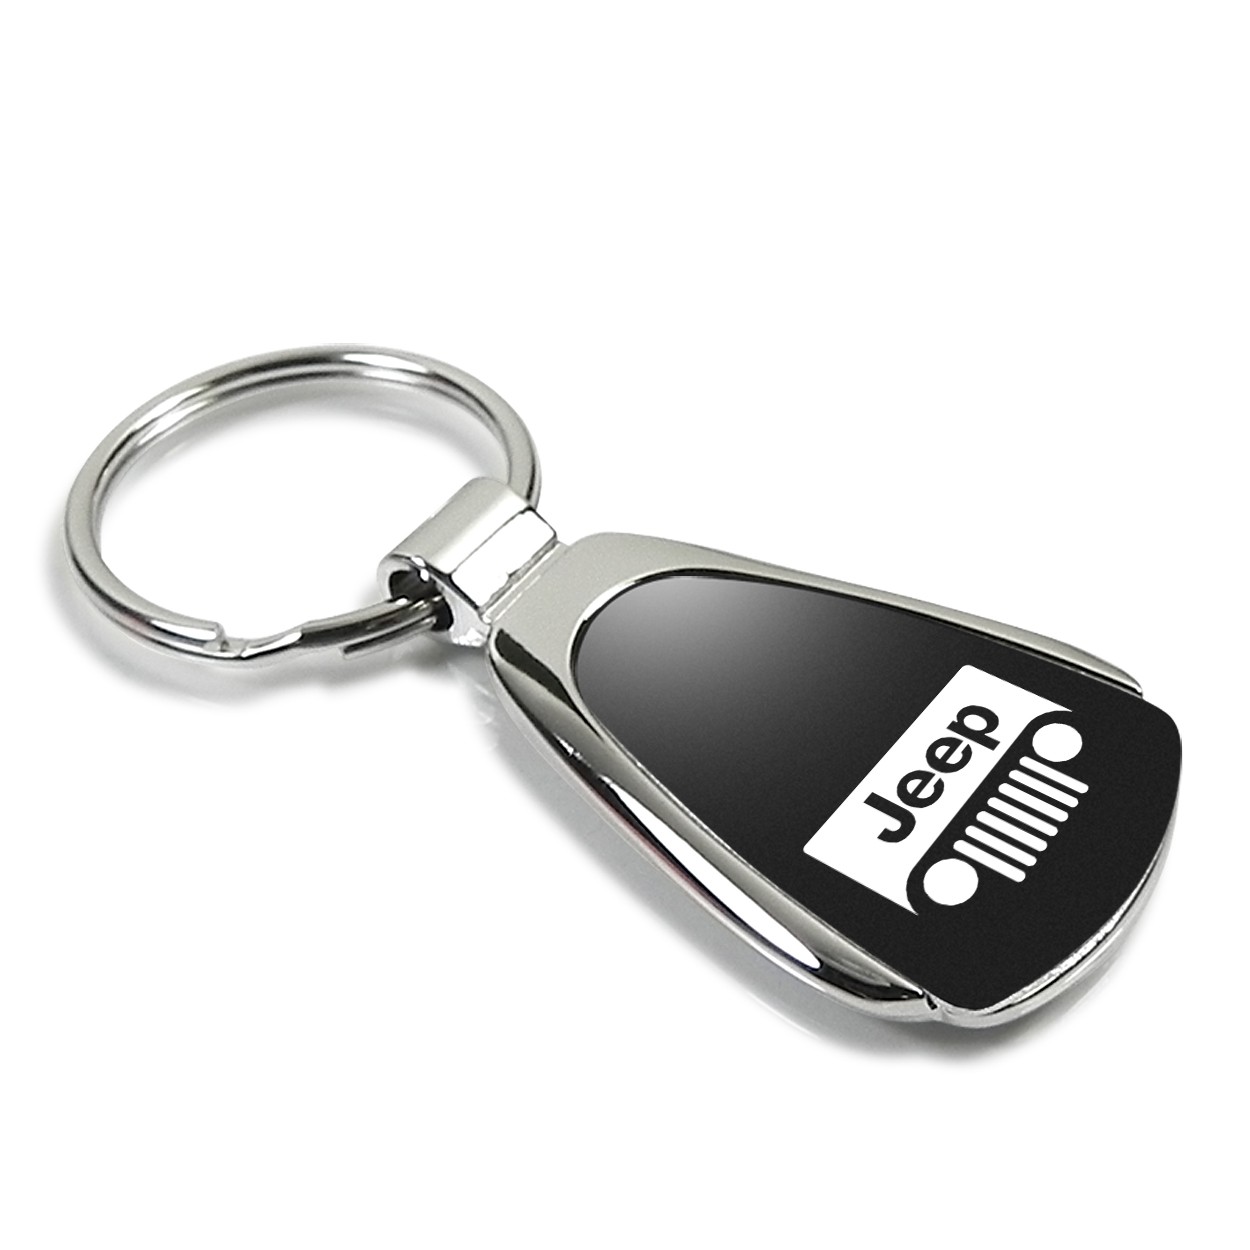 Schlüsselanhänger Jeep Grille, Metall, Tropfenform, schwarz/silber, Chrysler, Dodge, RAM, Jeep (Mopar), Schlüsselanhänger